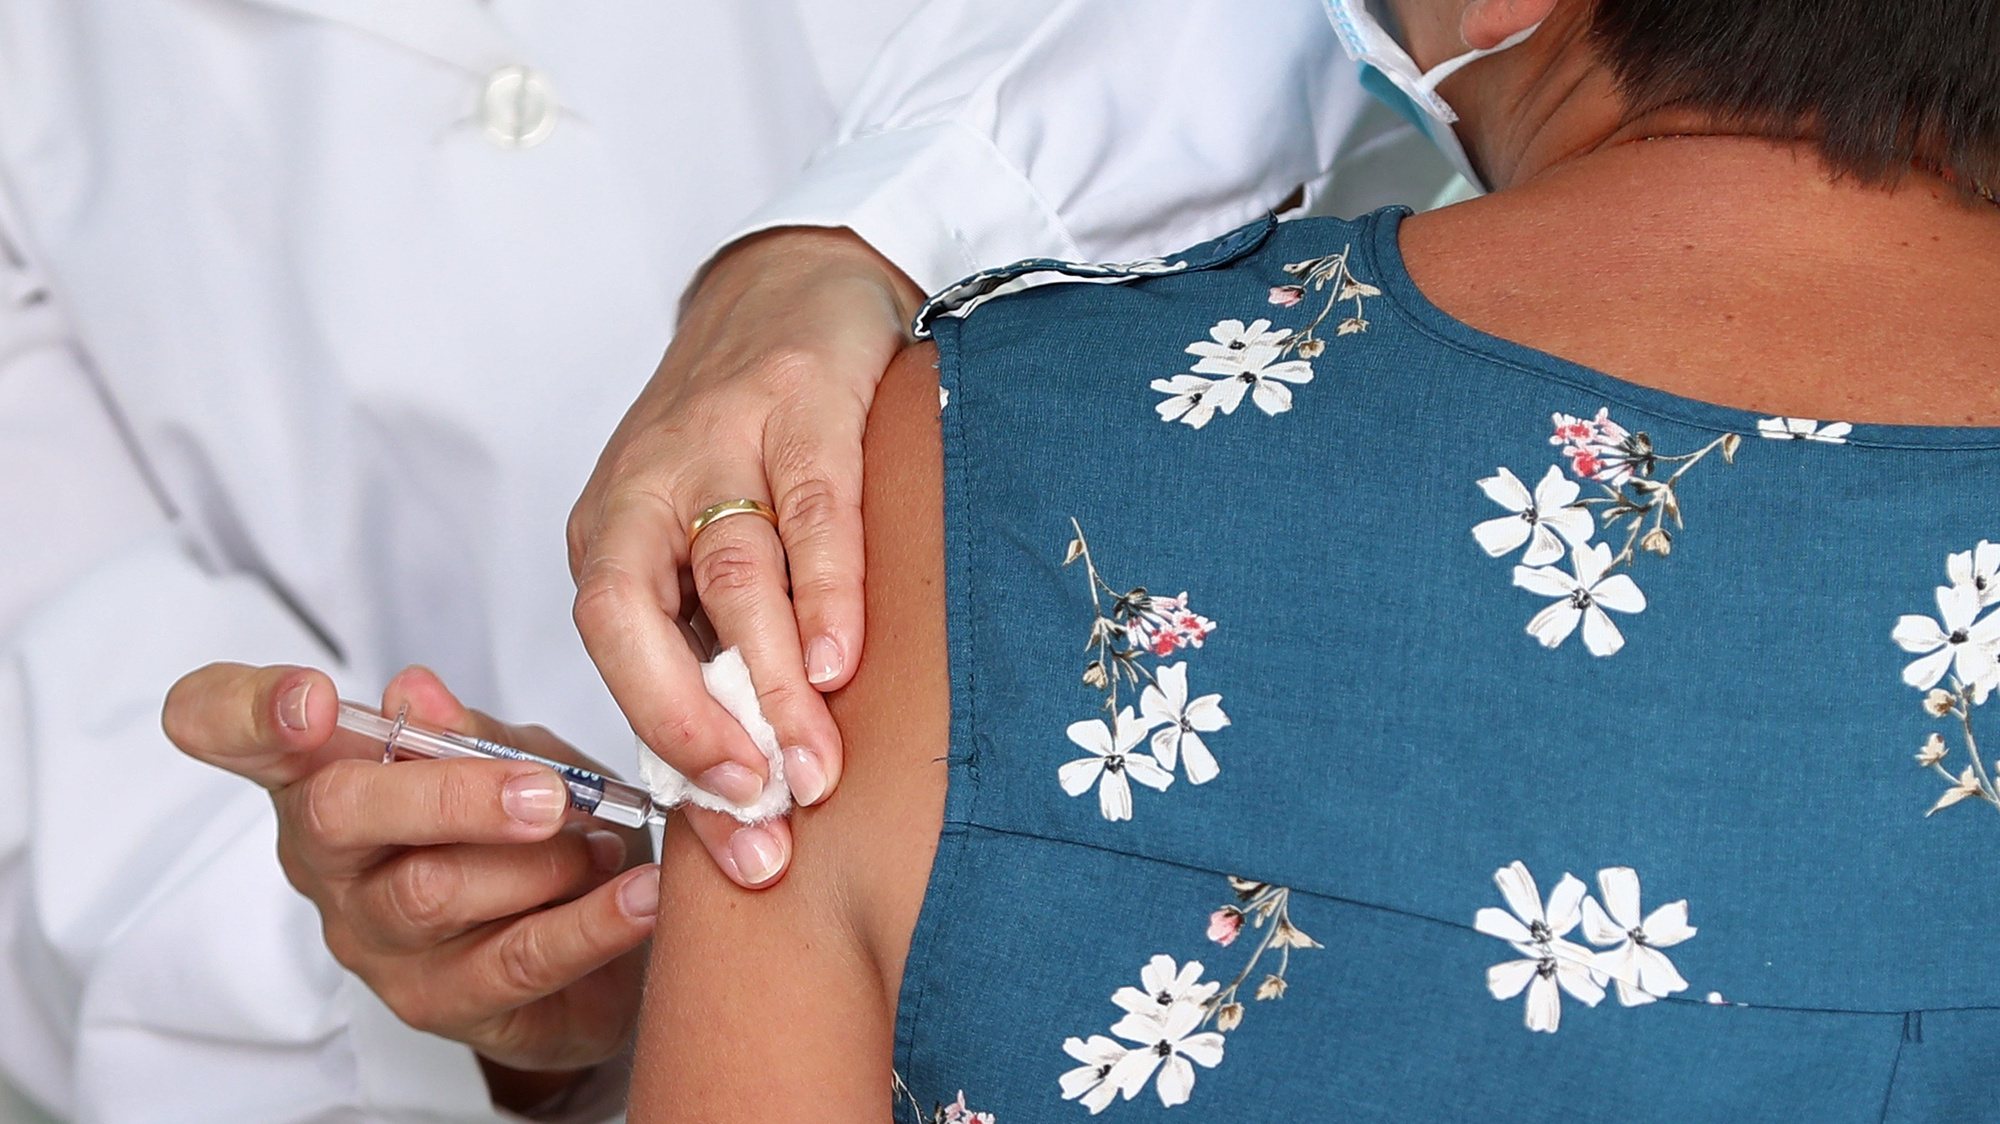 Uma utente do Lar da Casa do Artista é vacinada contra a gripe, durante uma visita da ministra da Saúde, Marta temido (ausente na foto), em que enfermeiros do Agrupamento de Centros de Saúde (ACES) Lisboa Norte vão vacinar idosos e profissionais, para assinalar o início da época vacinal contra a gripe sazonal 2020, em Lisboa, 28 de setembro de 2020. Hoje tem início a 1ª fase de vacinação gratuita contra a gripe sazonal, a qual  inclui “residentes, utentes e profissionais de estabelecimentos de respostas sociais, doentes e profissionais da rede de cuidados continuados integrados, profissionais do SNS e grávidas”. ANTÓNIO PEDRO SANTOS/LUSA